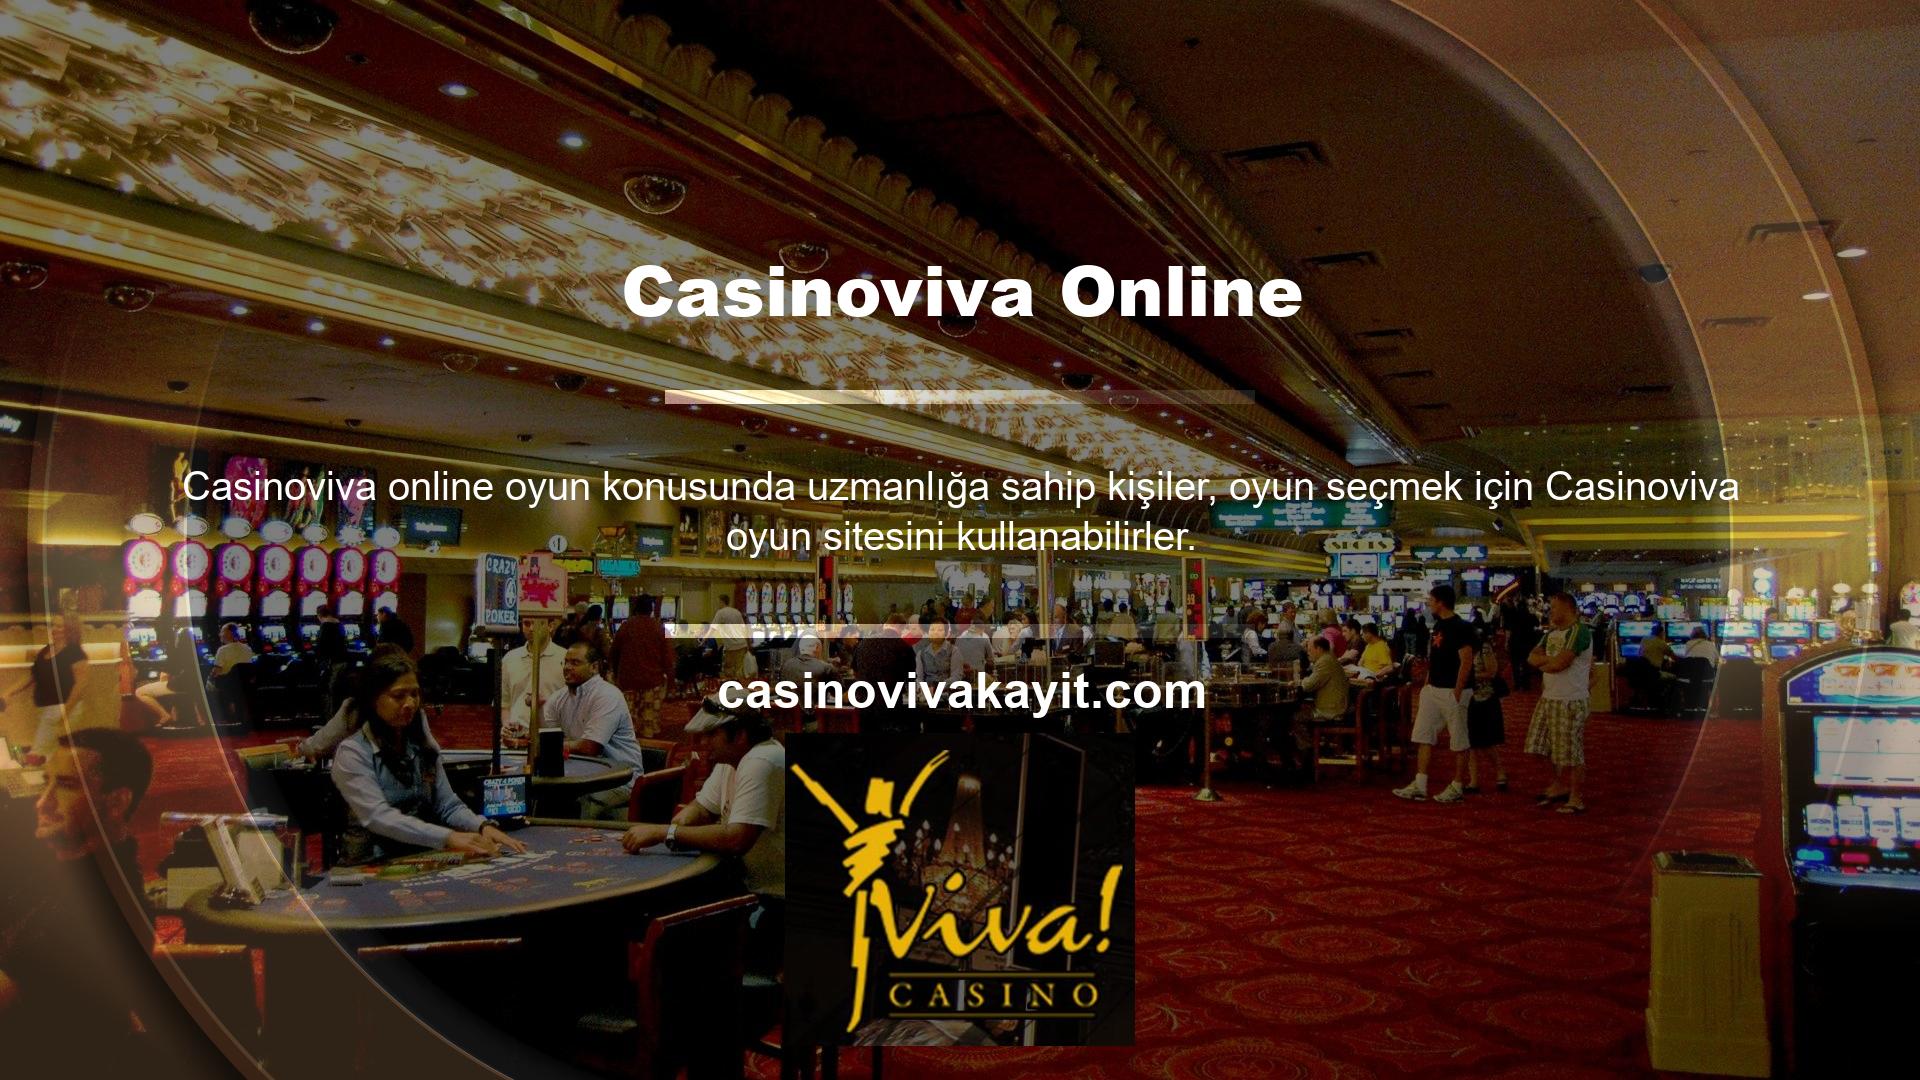 Kazı kazan kartlarını çevrimiçi oynamak için aşağıdaki öneriler şunlardır: Erişmek için Casinoviva web sitesine katılın

	Bir oyun odası arayın
	Bir üye hesabından ödül kartları edinin